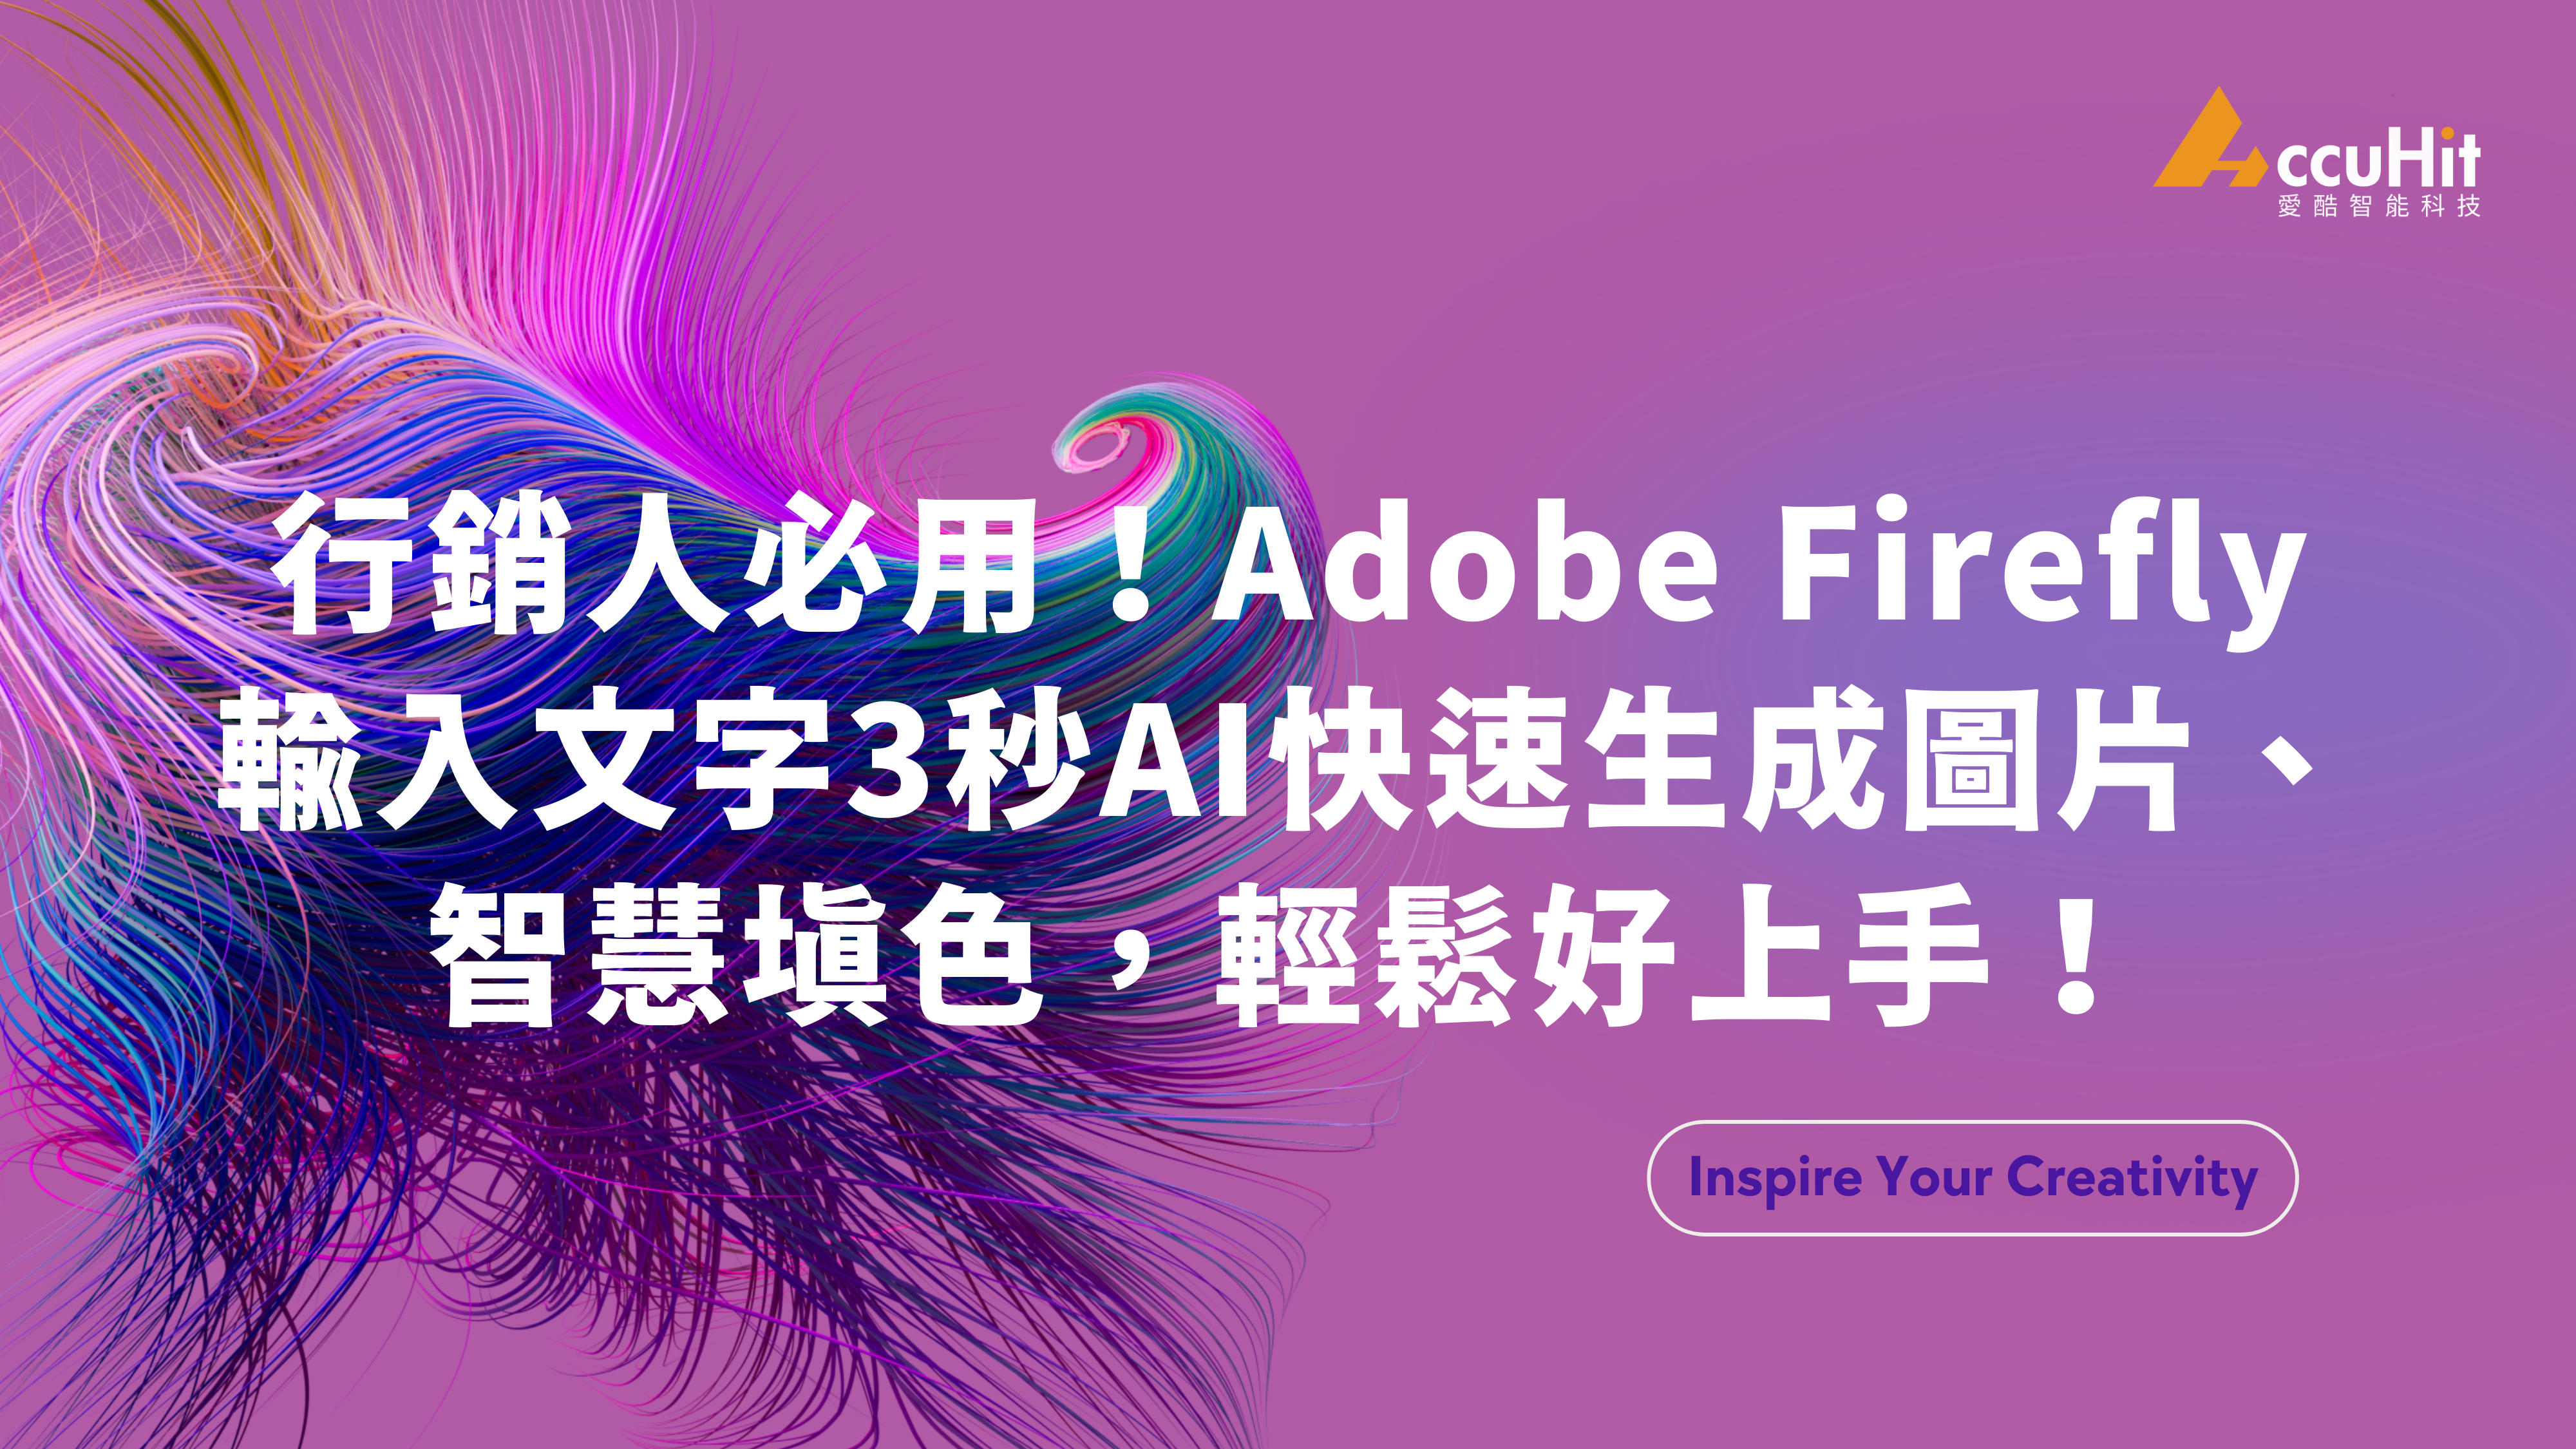 Adobe Firefly 是由 Adobe 所推出的生成式 AI 繪圖工具，專為創意人士設計，透過 Photoshop 內的 Firefly 用文字來生成圖像，快速產生各種圖片素材，還能夠使用智慧型填色功能，選取範圍即可快速生成圖像或快速替換不同背景與物件。透過本文，您將更認識這款生成式繪圖工具！